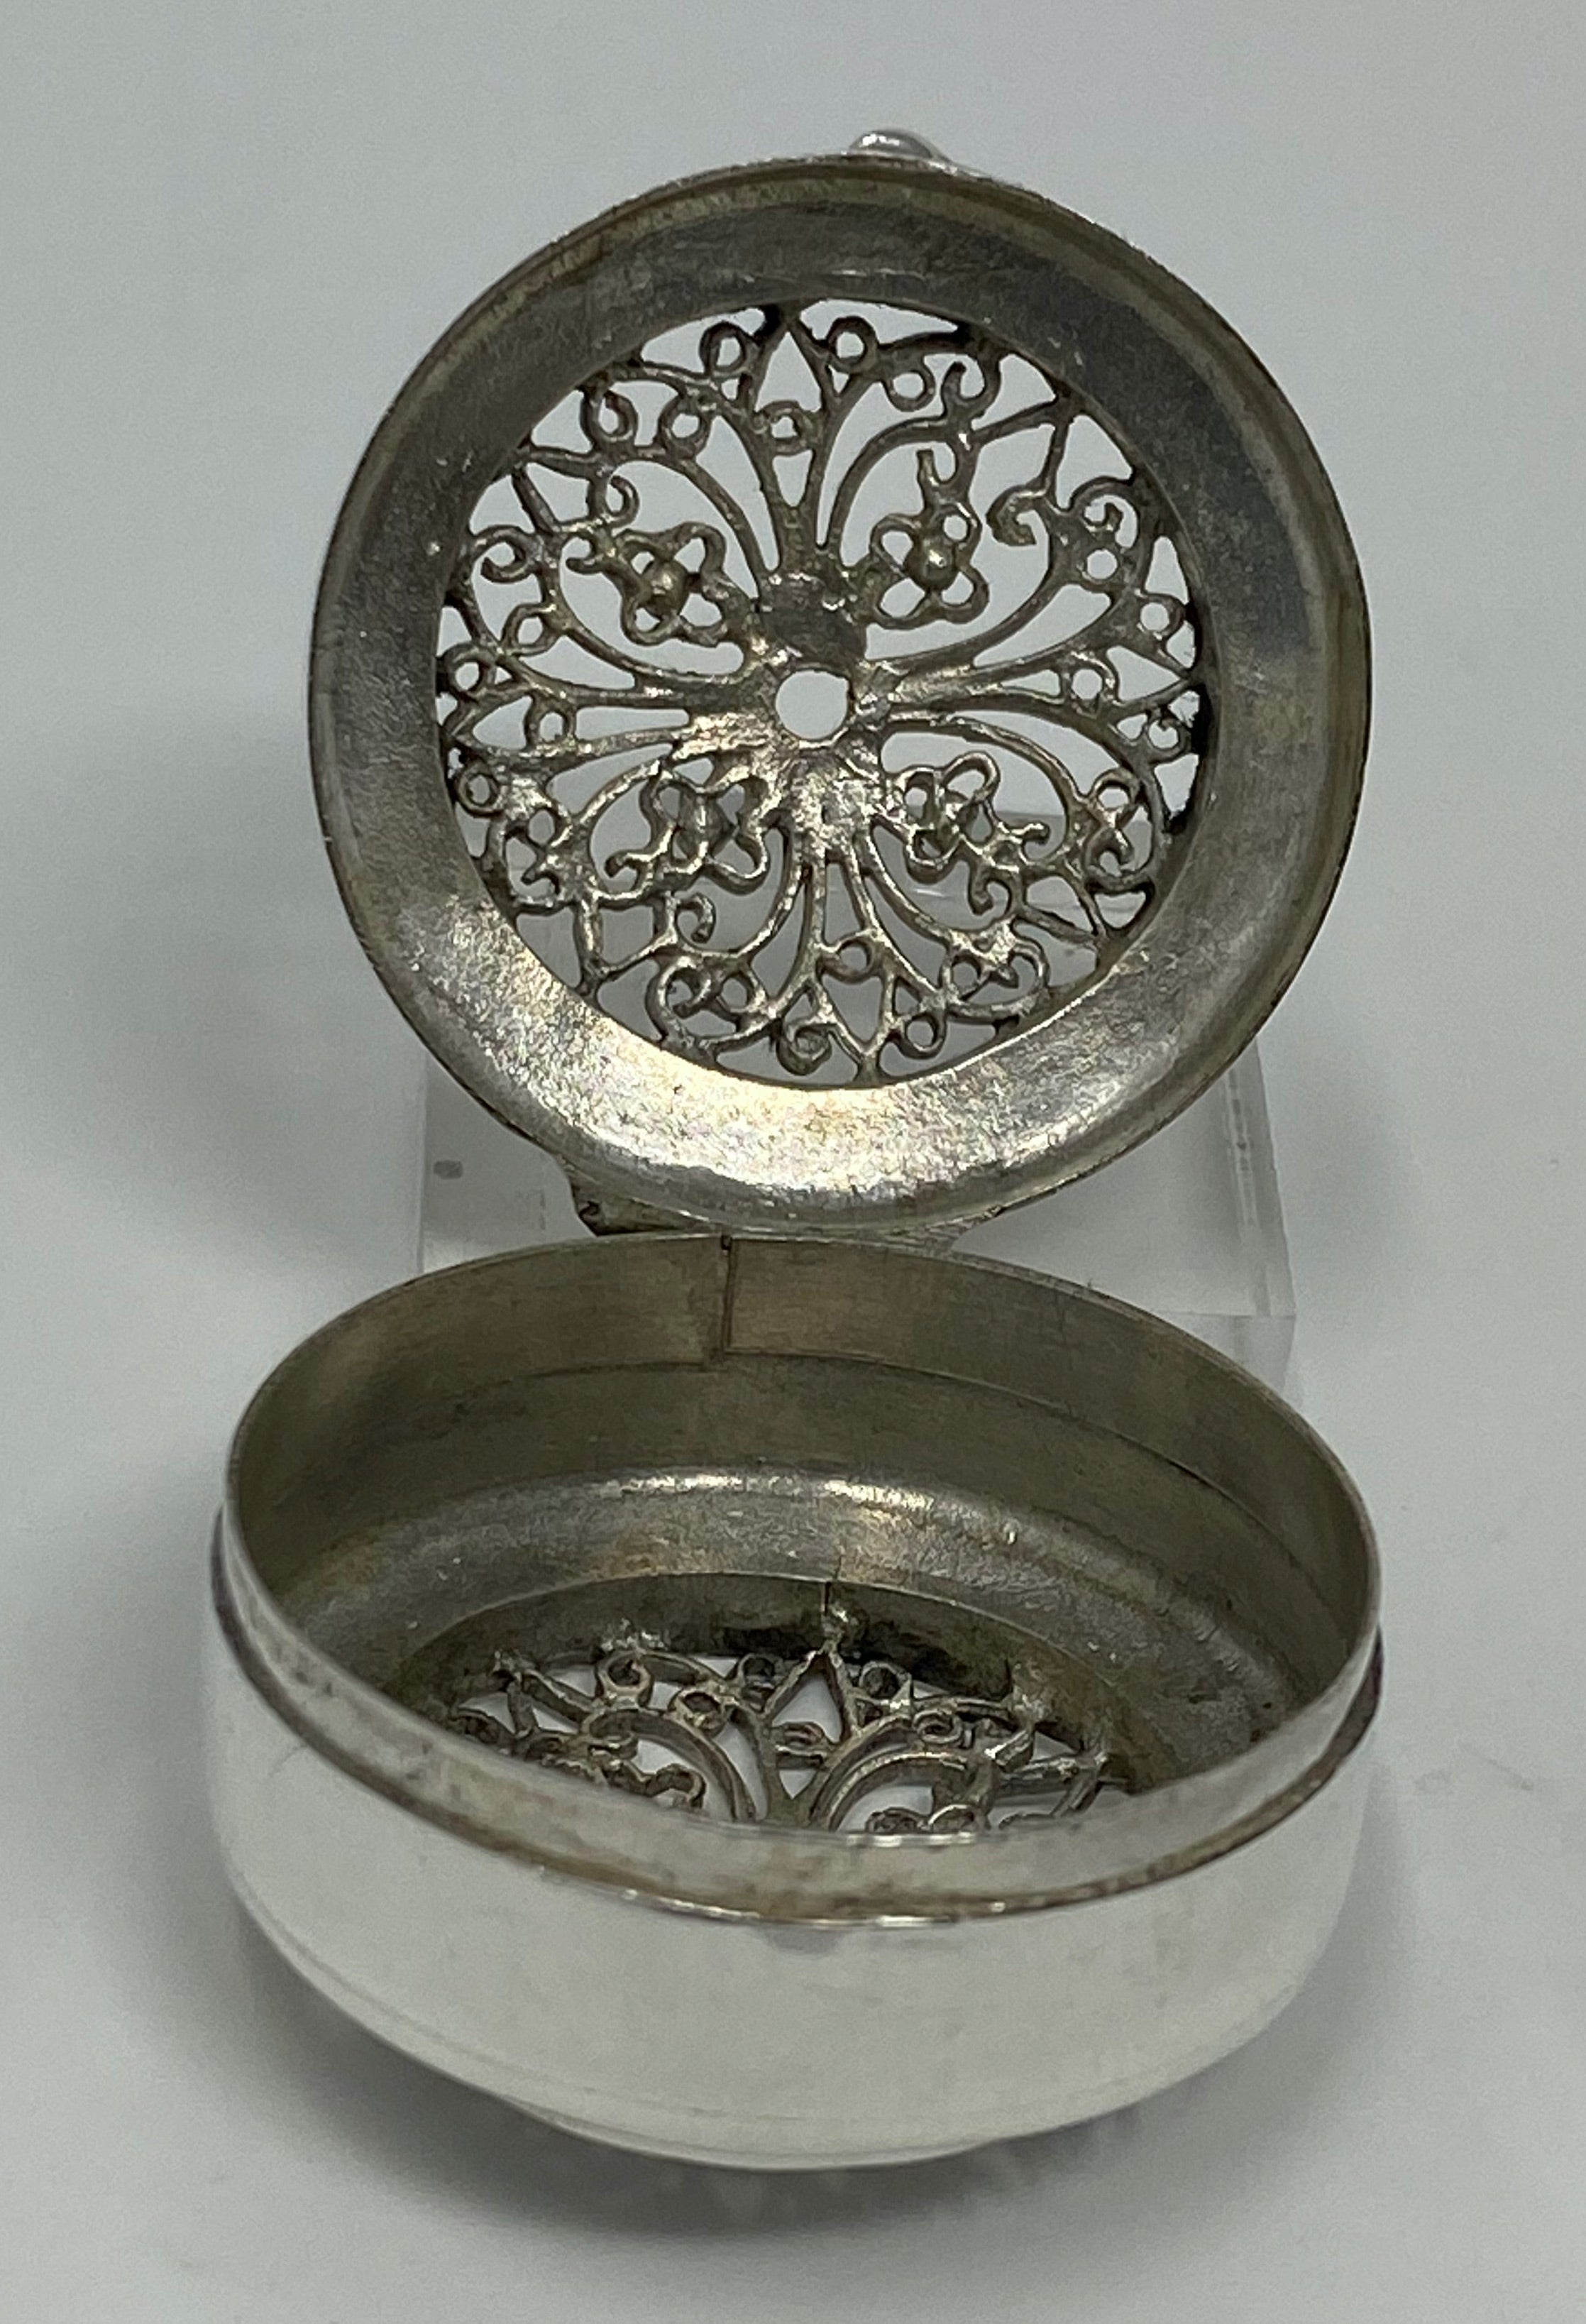 Silver Decorative Box